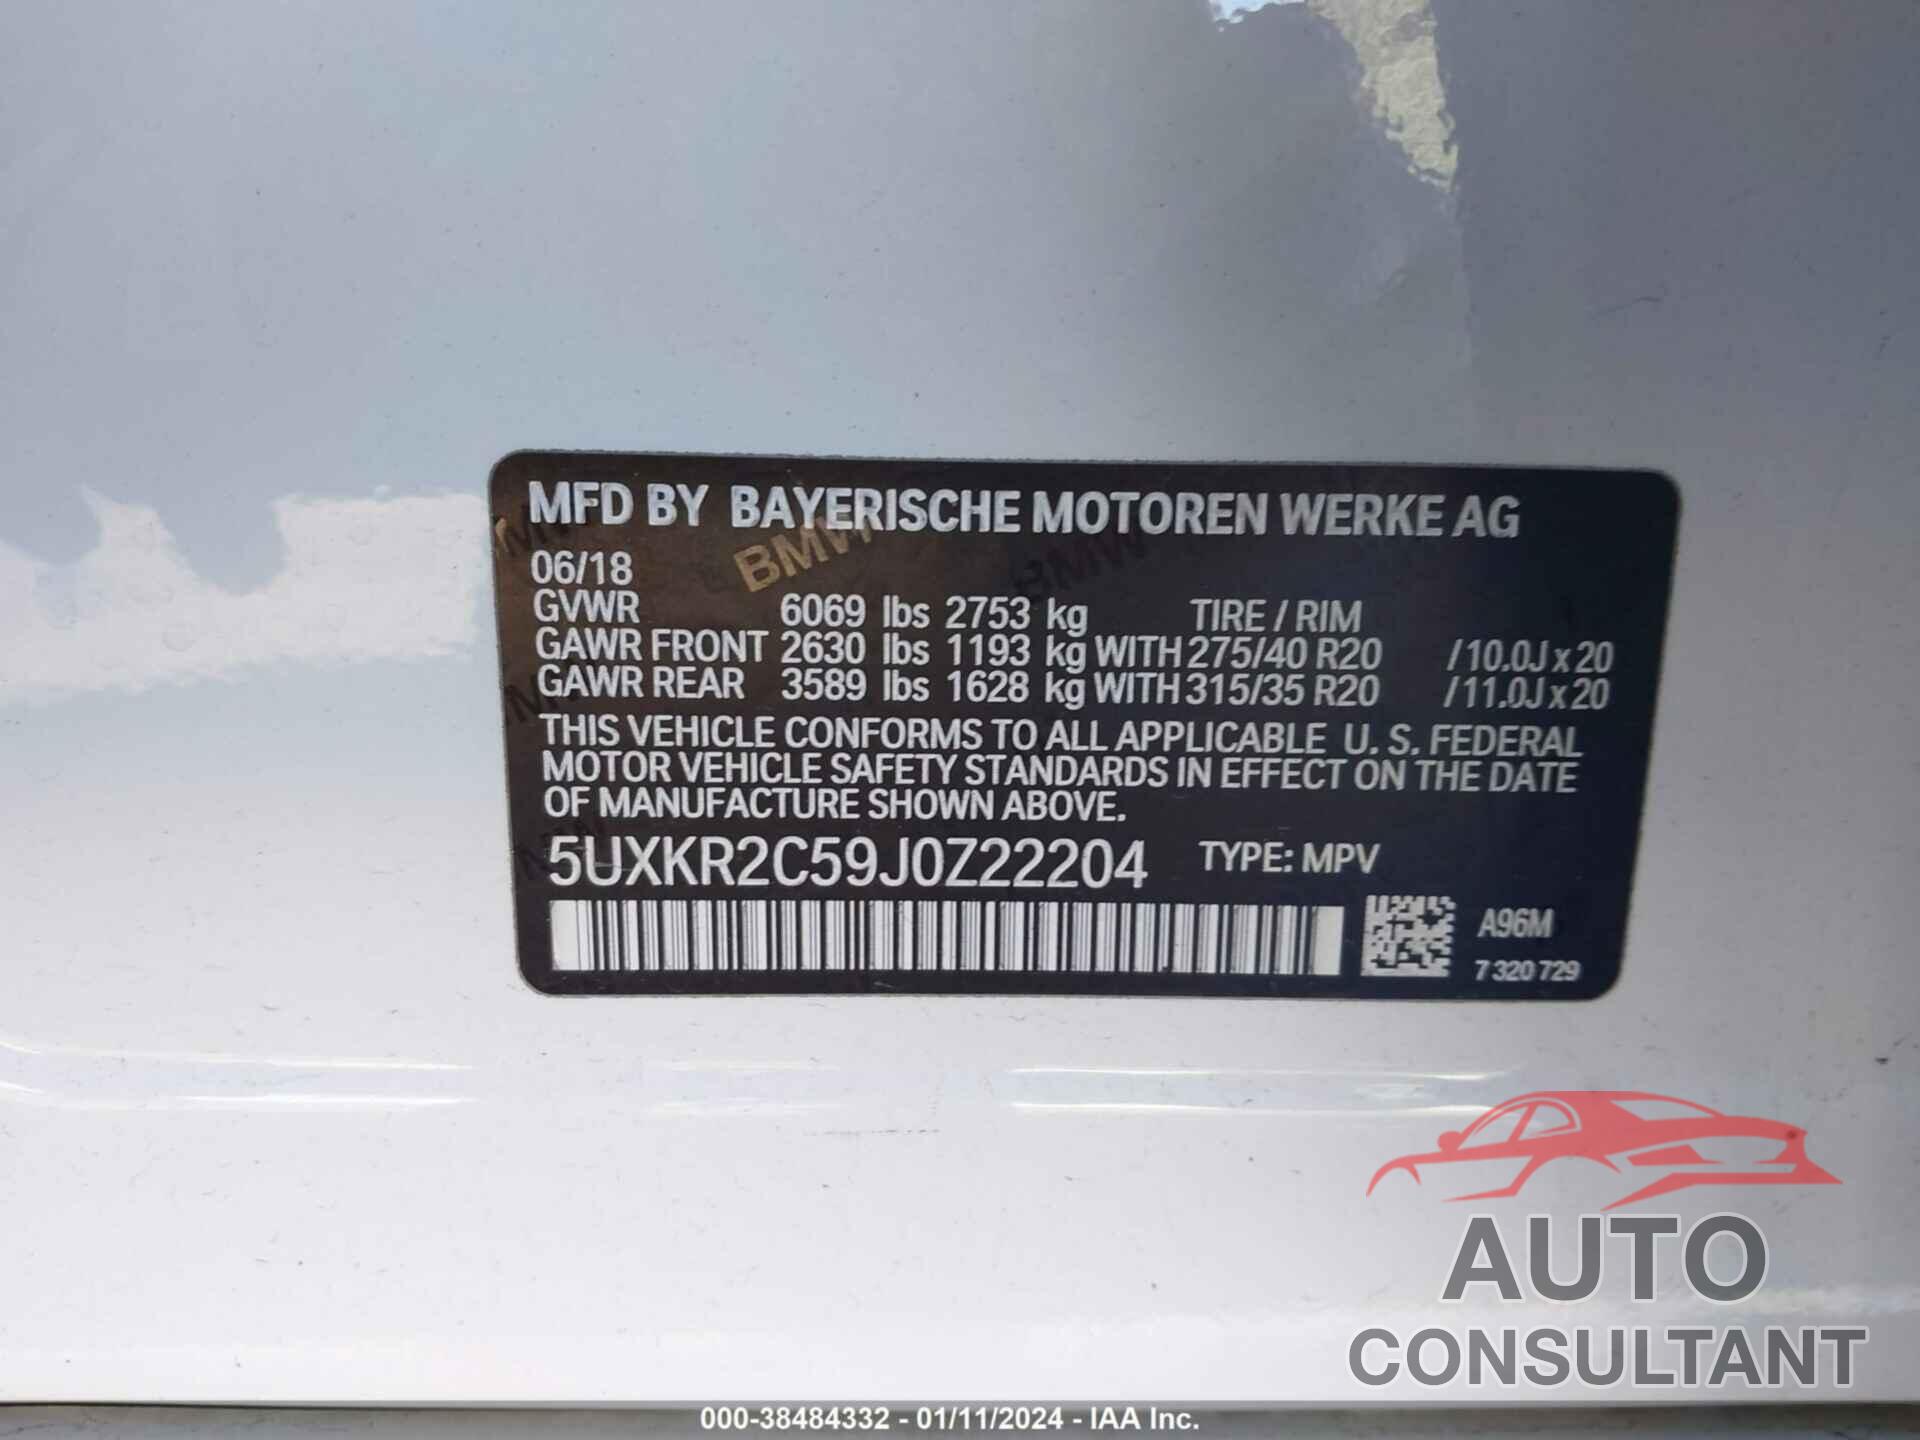 BMW X5 2018 - 5UXKR2C59J0Z22204